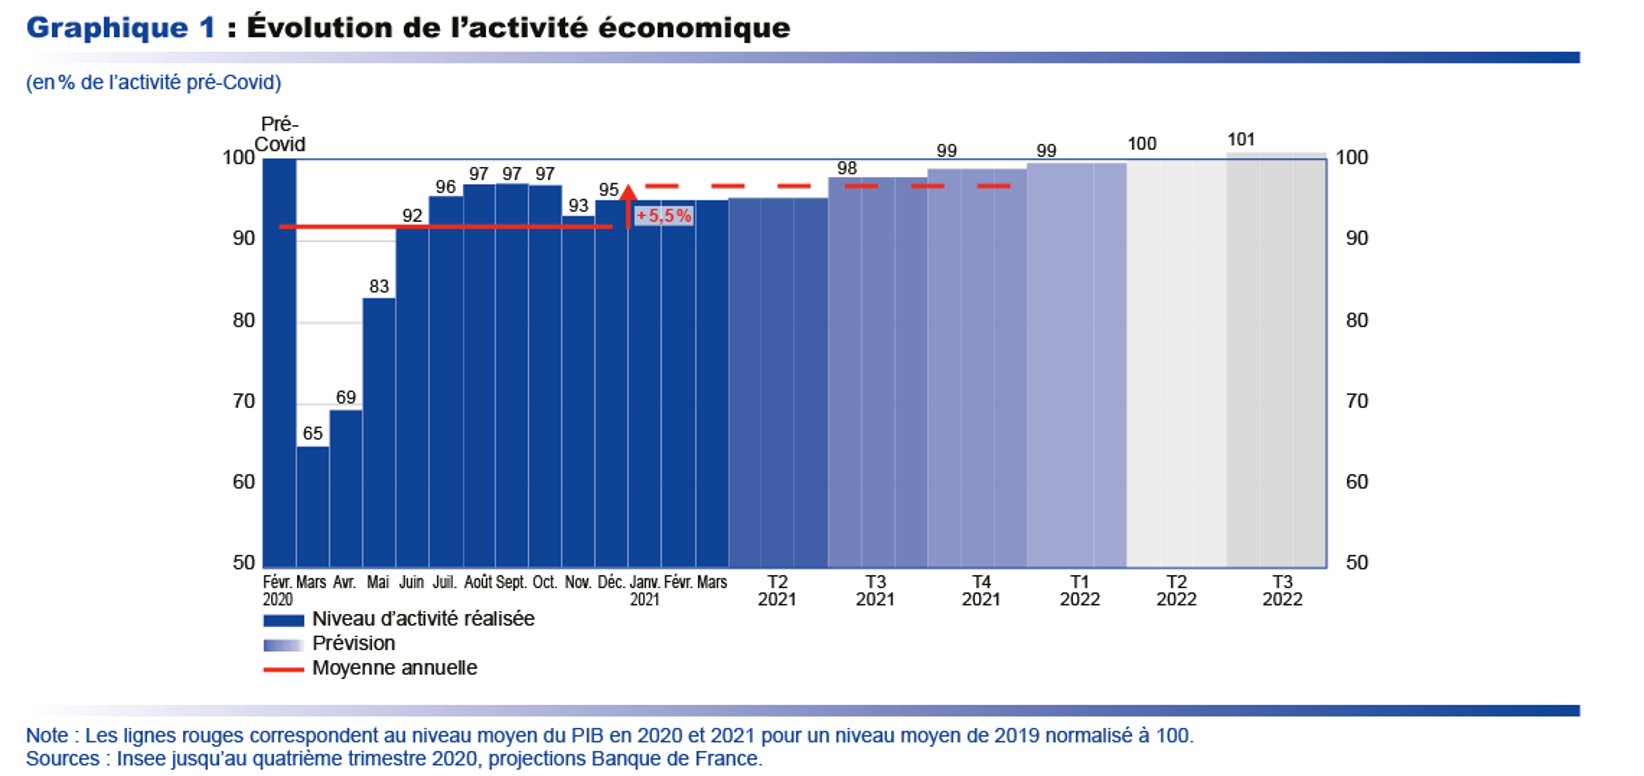 Le niveau d’activité de l’avant-crise reviendrait mi-2022 d’après la Banque de France